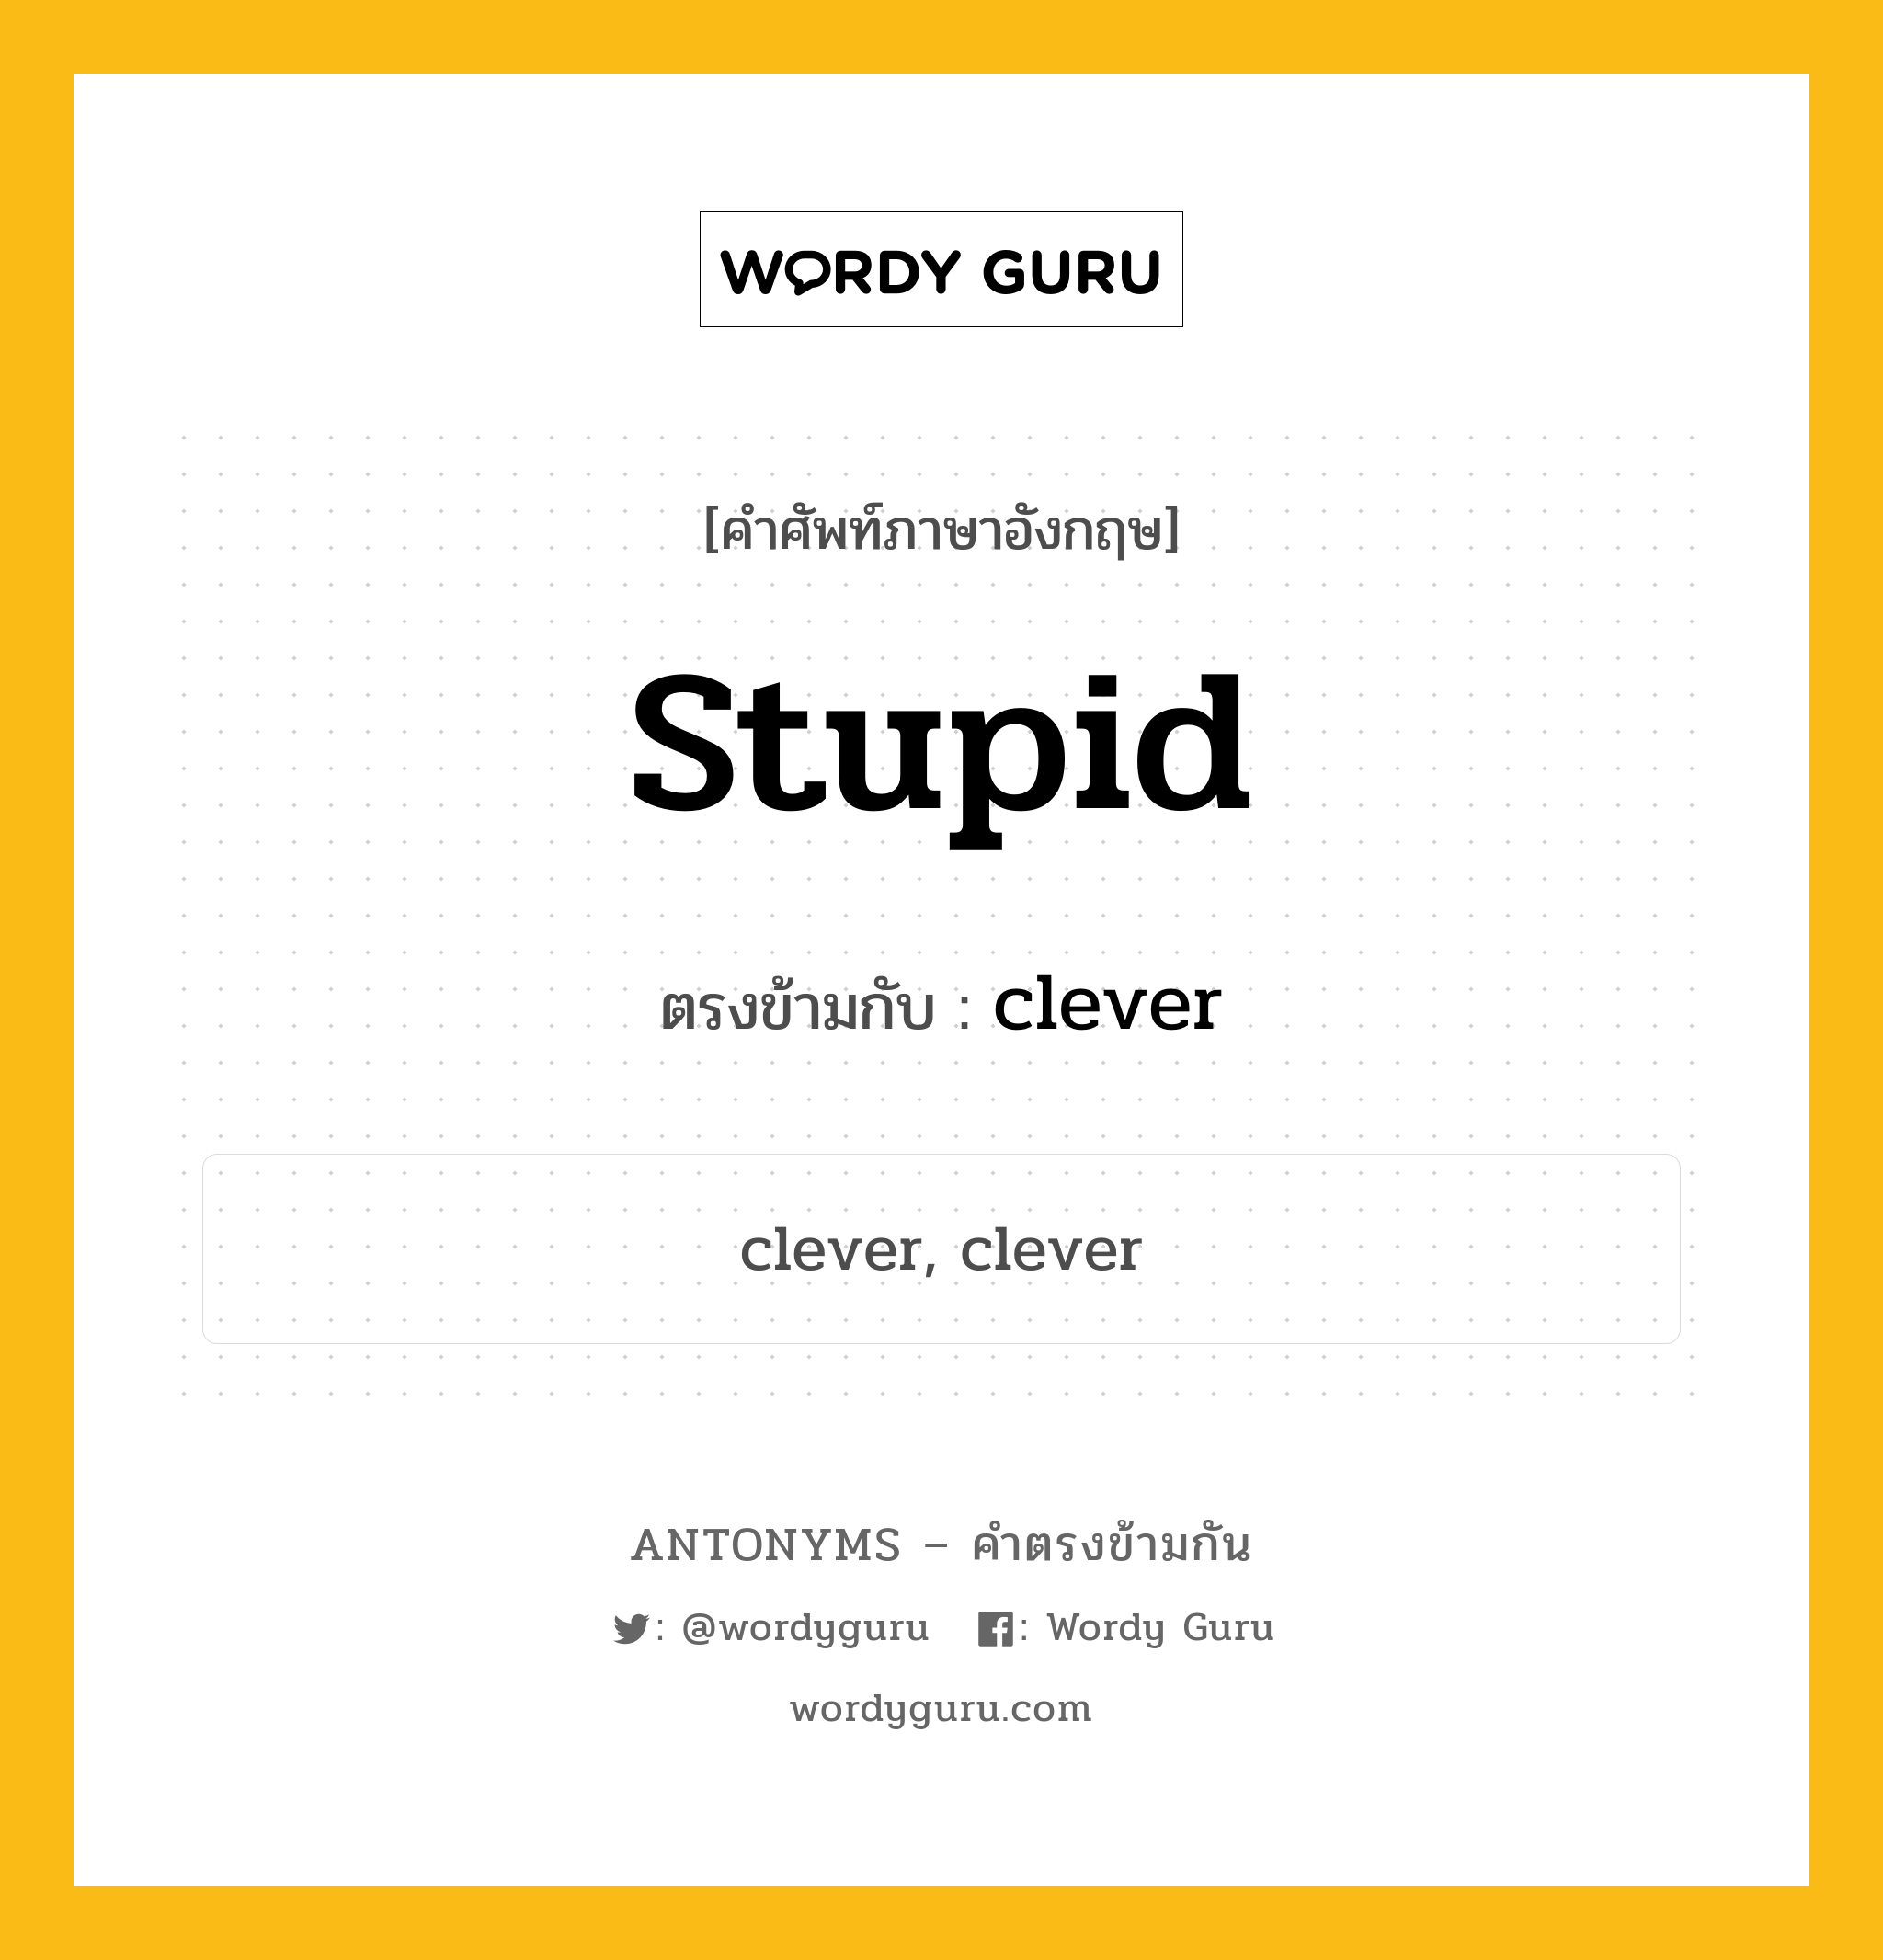 stupid เป็นคำตรงข้ามกับคำไหนบ้าง?, คำศัพท์ภาษาอังกฤษ stupid ตรงข้ามกับ clever หมวด clever